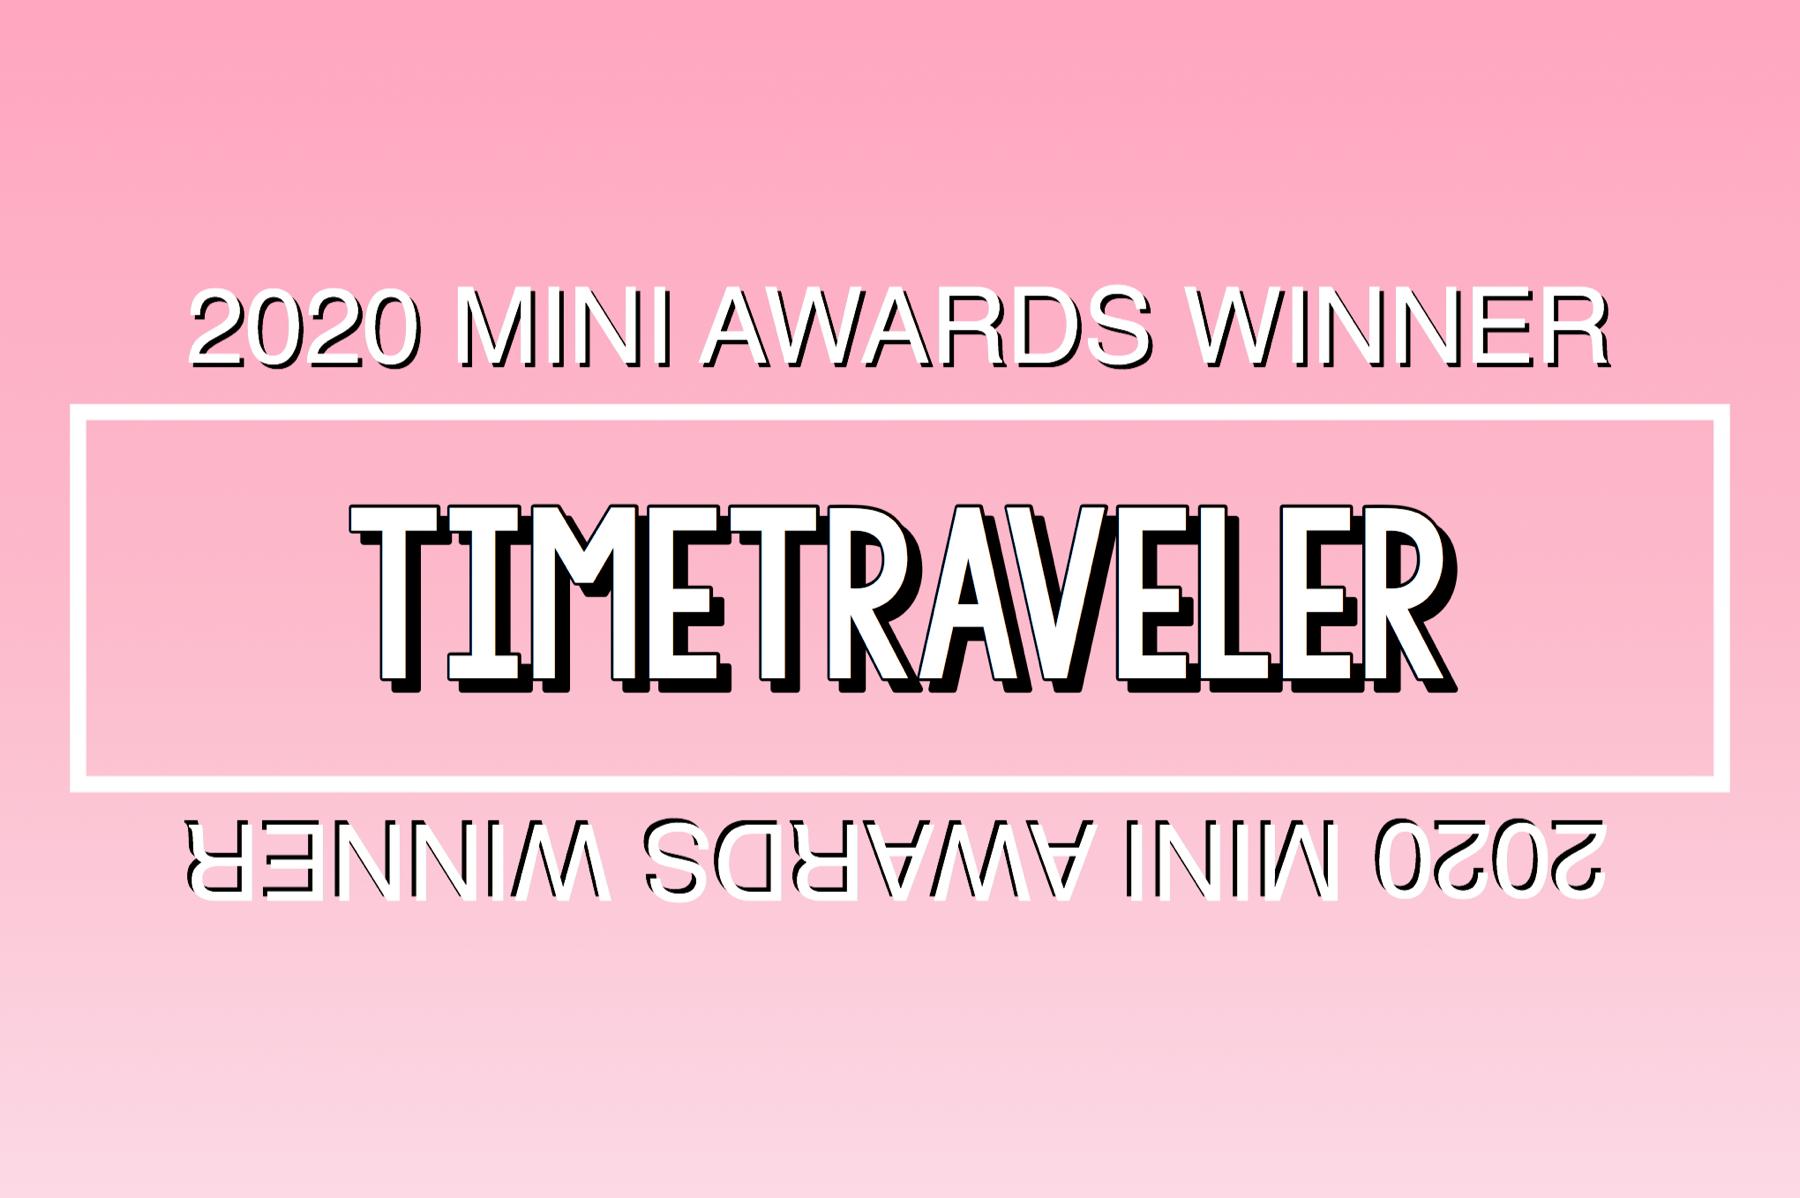 2020 Mini Awards Winner @timetraveler!